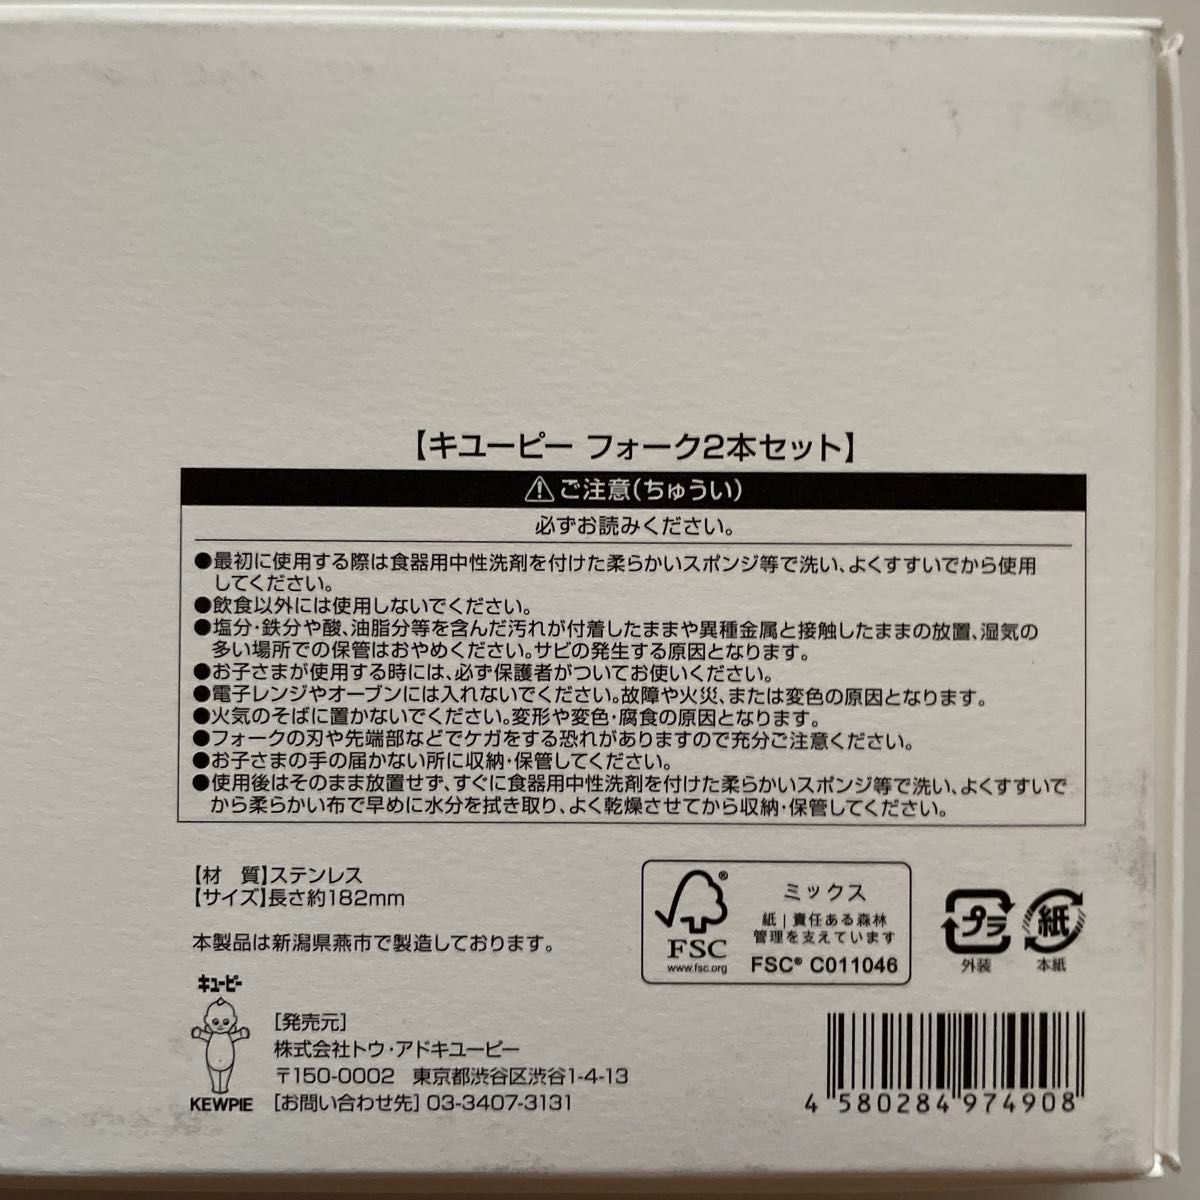 【未使用】Kewpie キューピー フォーク 2本セット (株主優待・非売品)